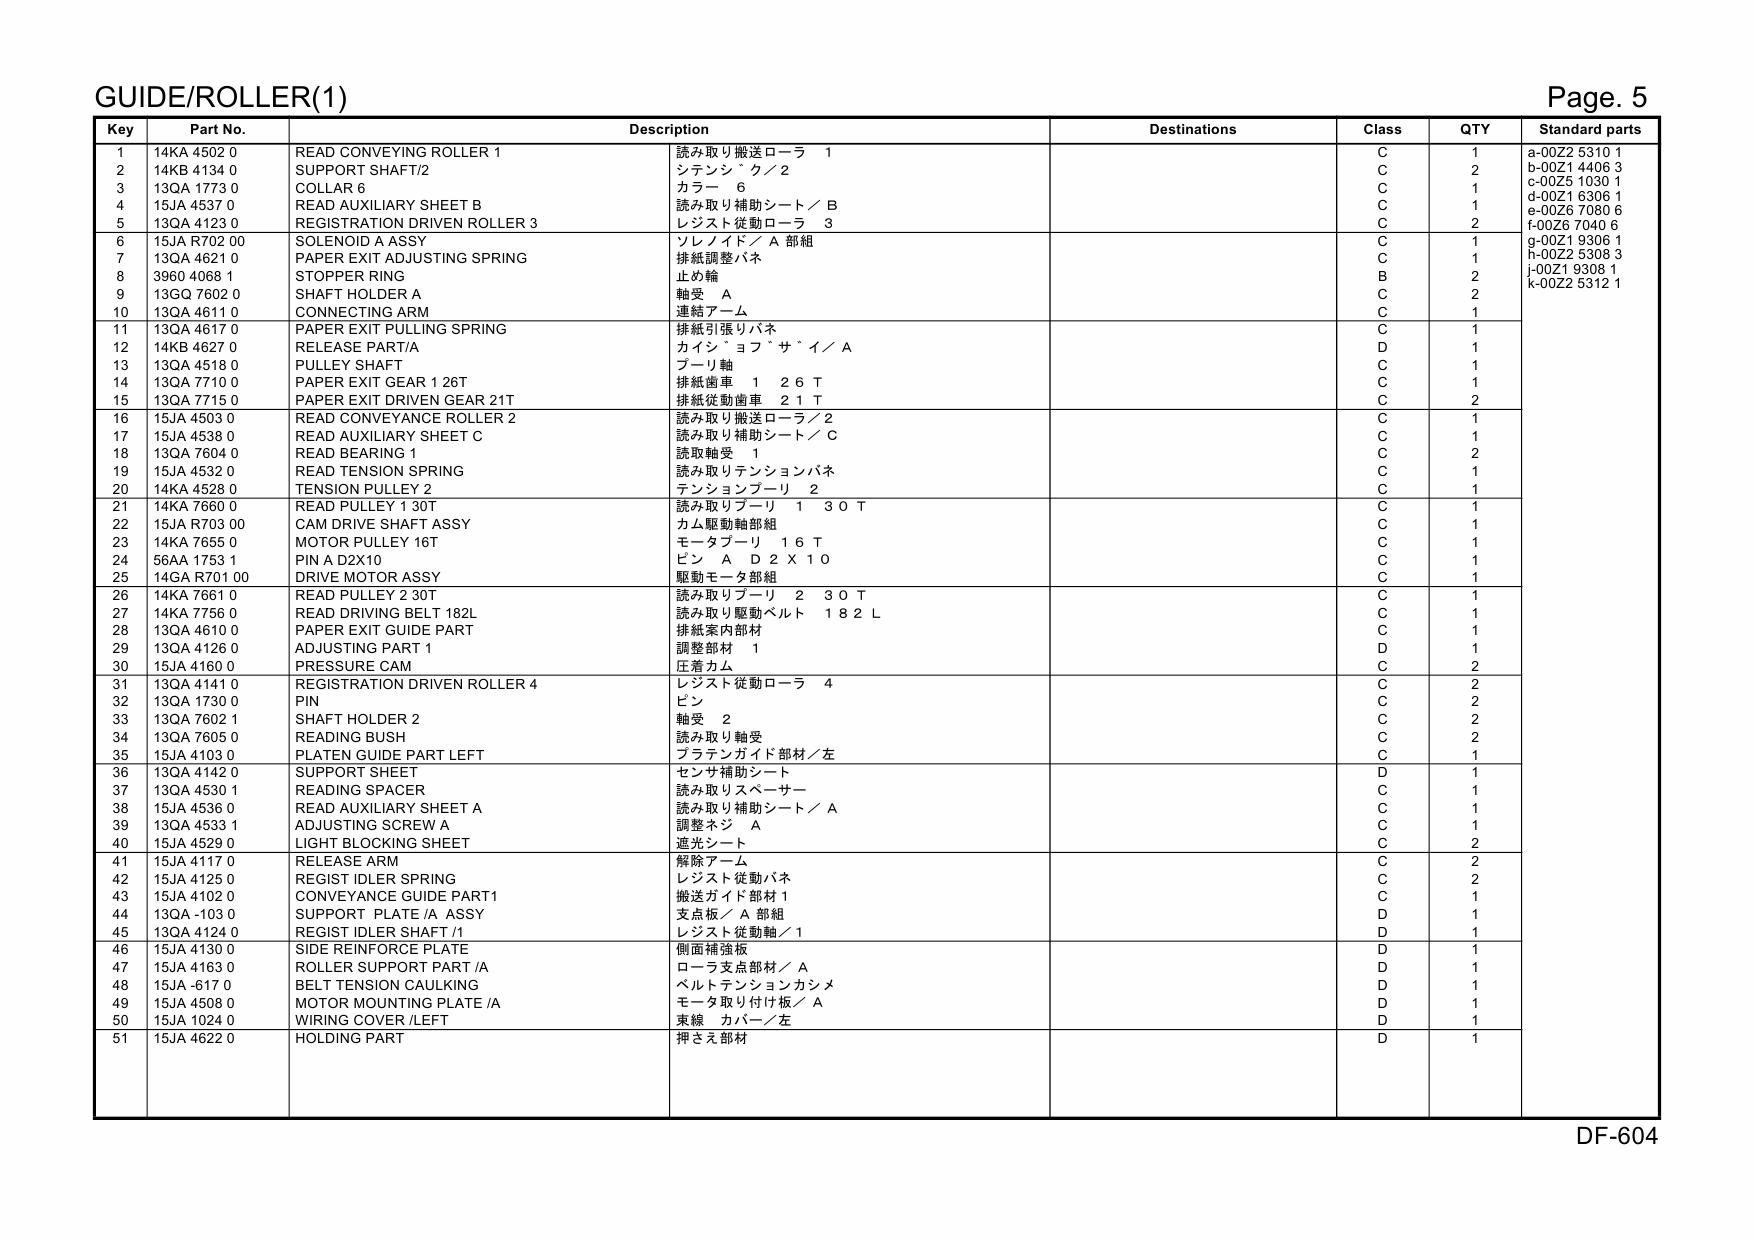 Konica-Minolta Options DF-604 15JA Parts Manual-2